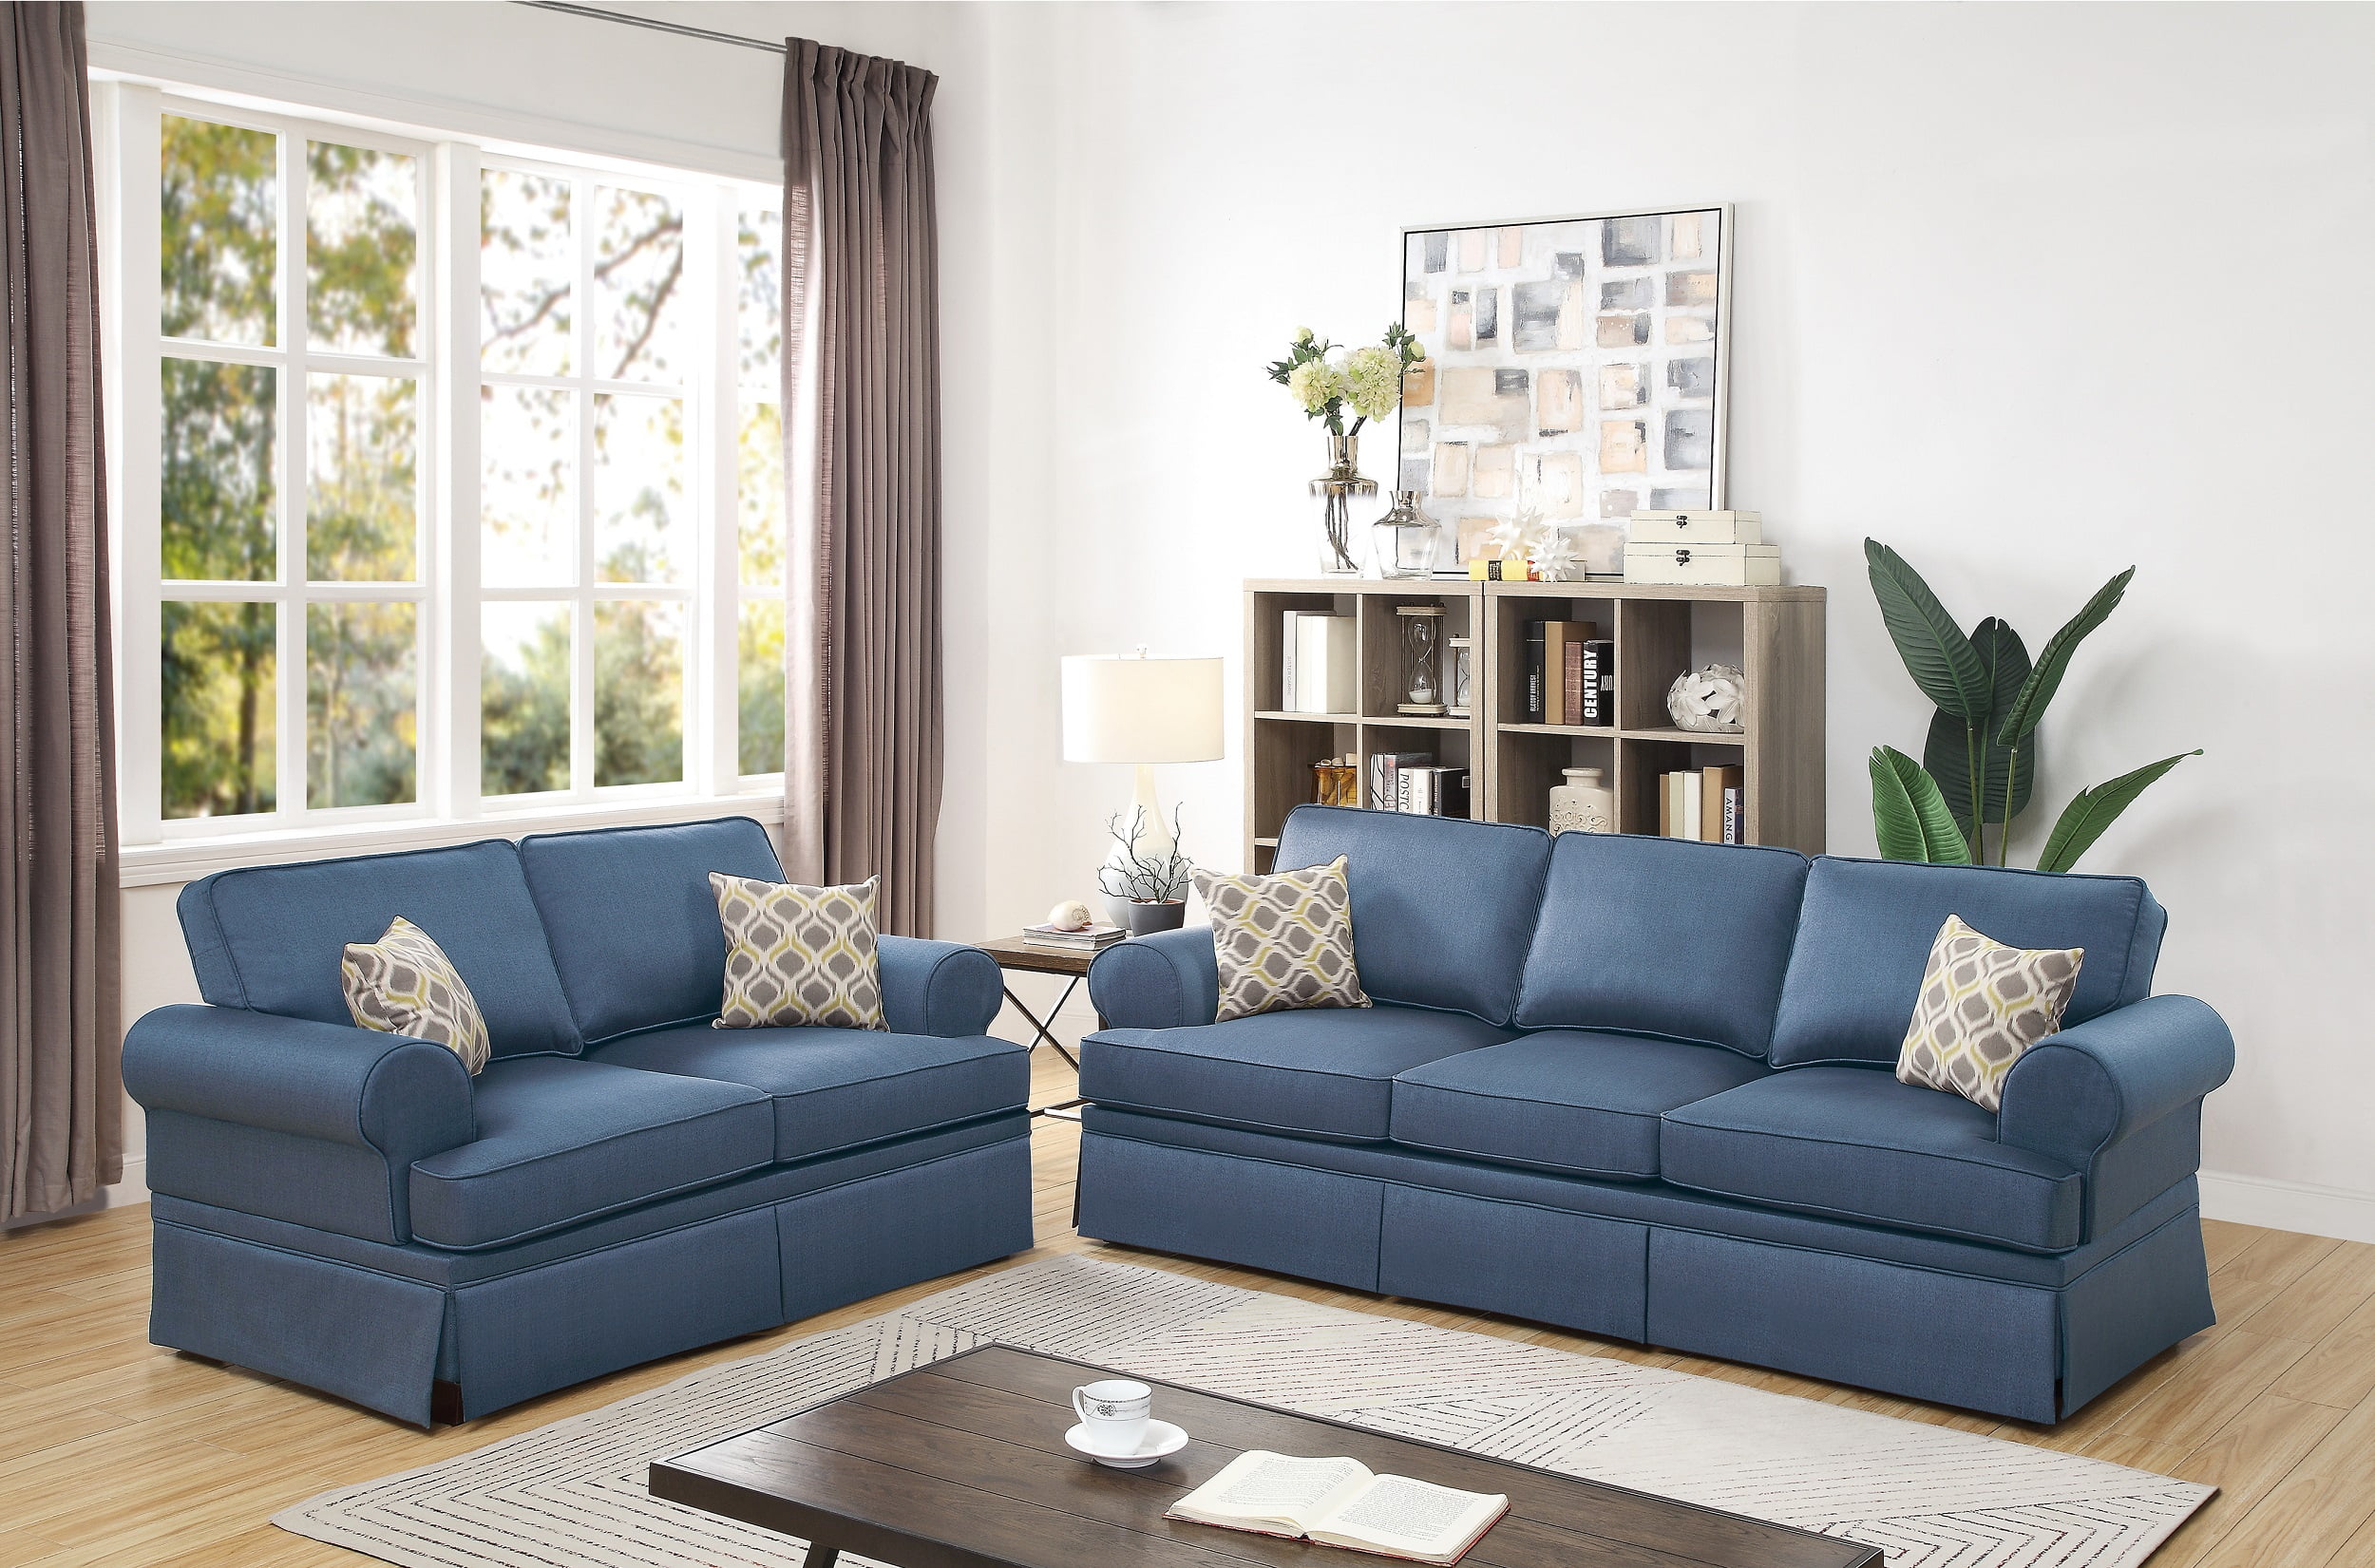 New Sofas For Smaller Living Room